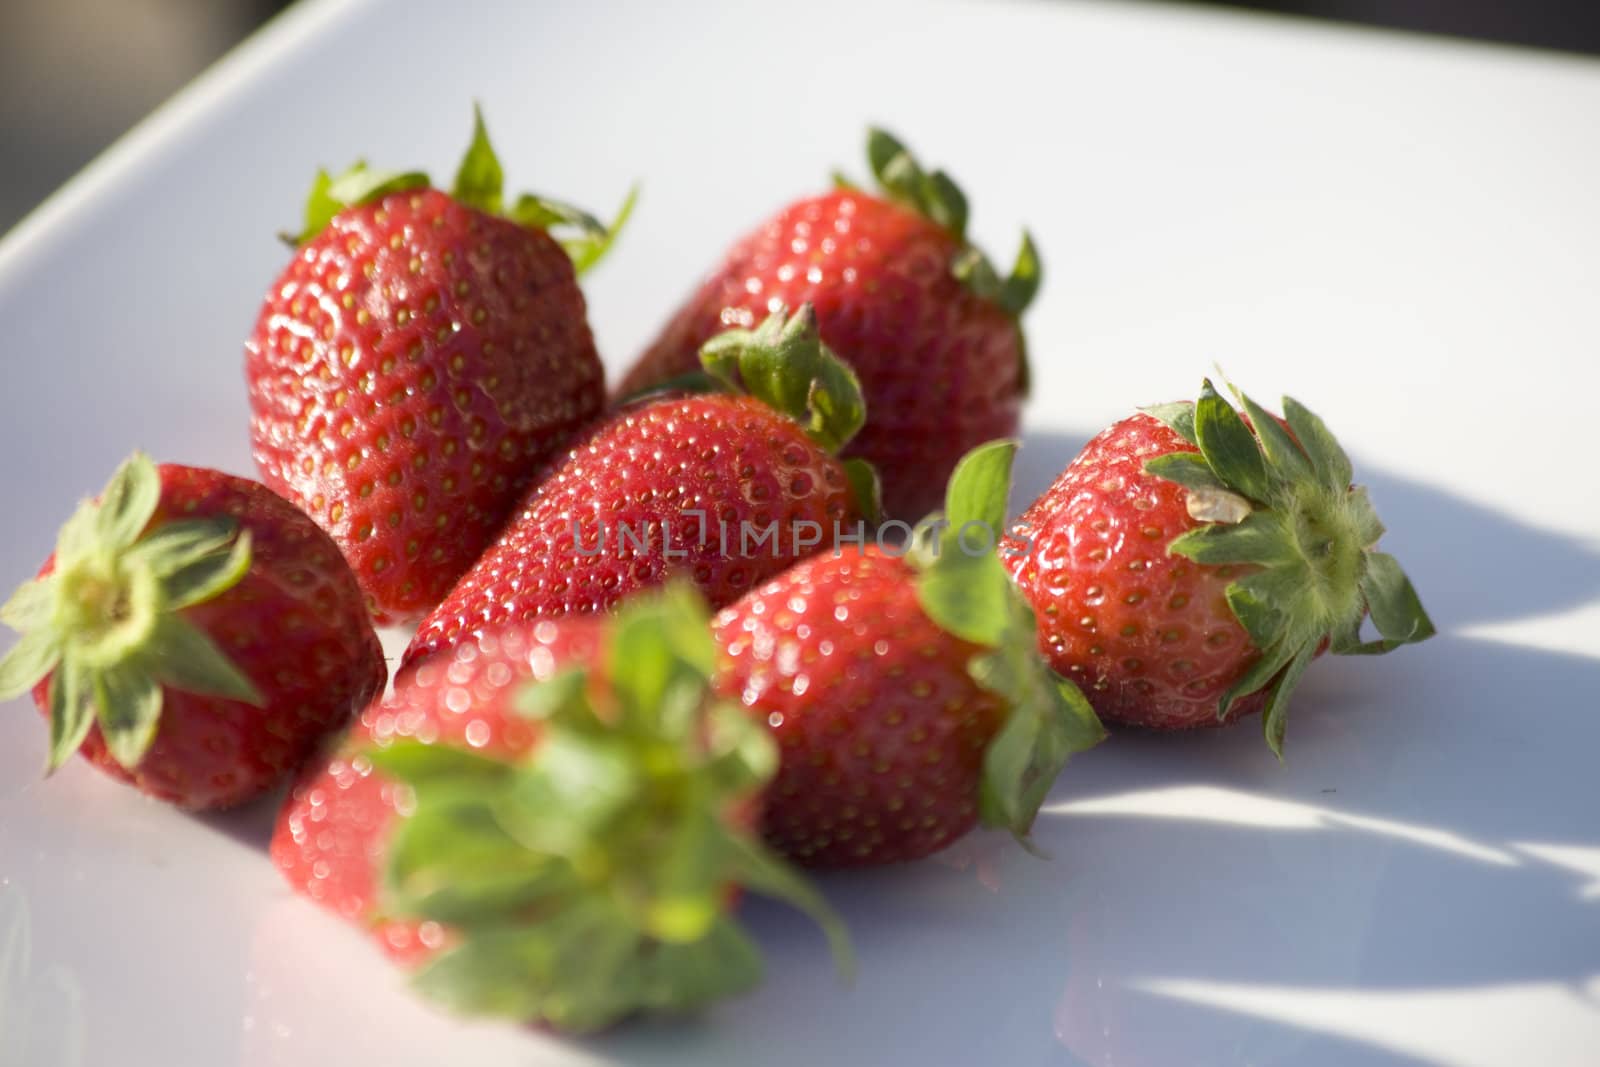 Strawberries by abg2000